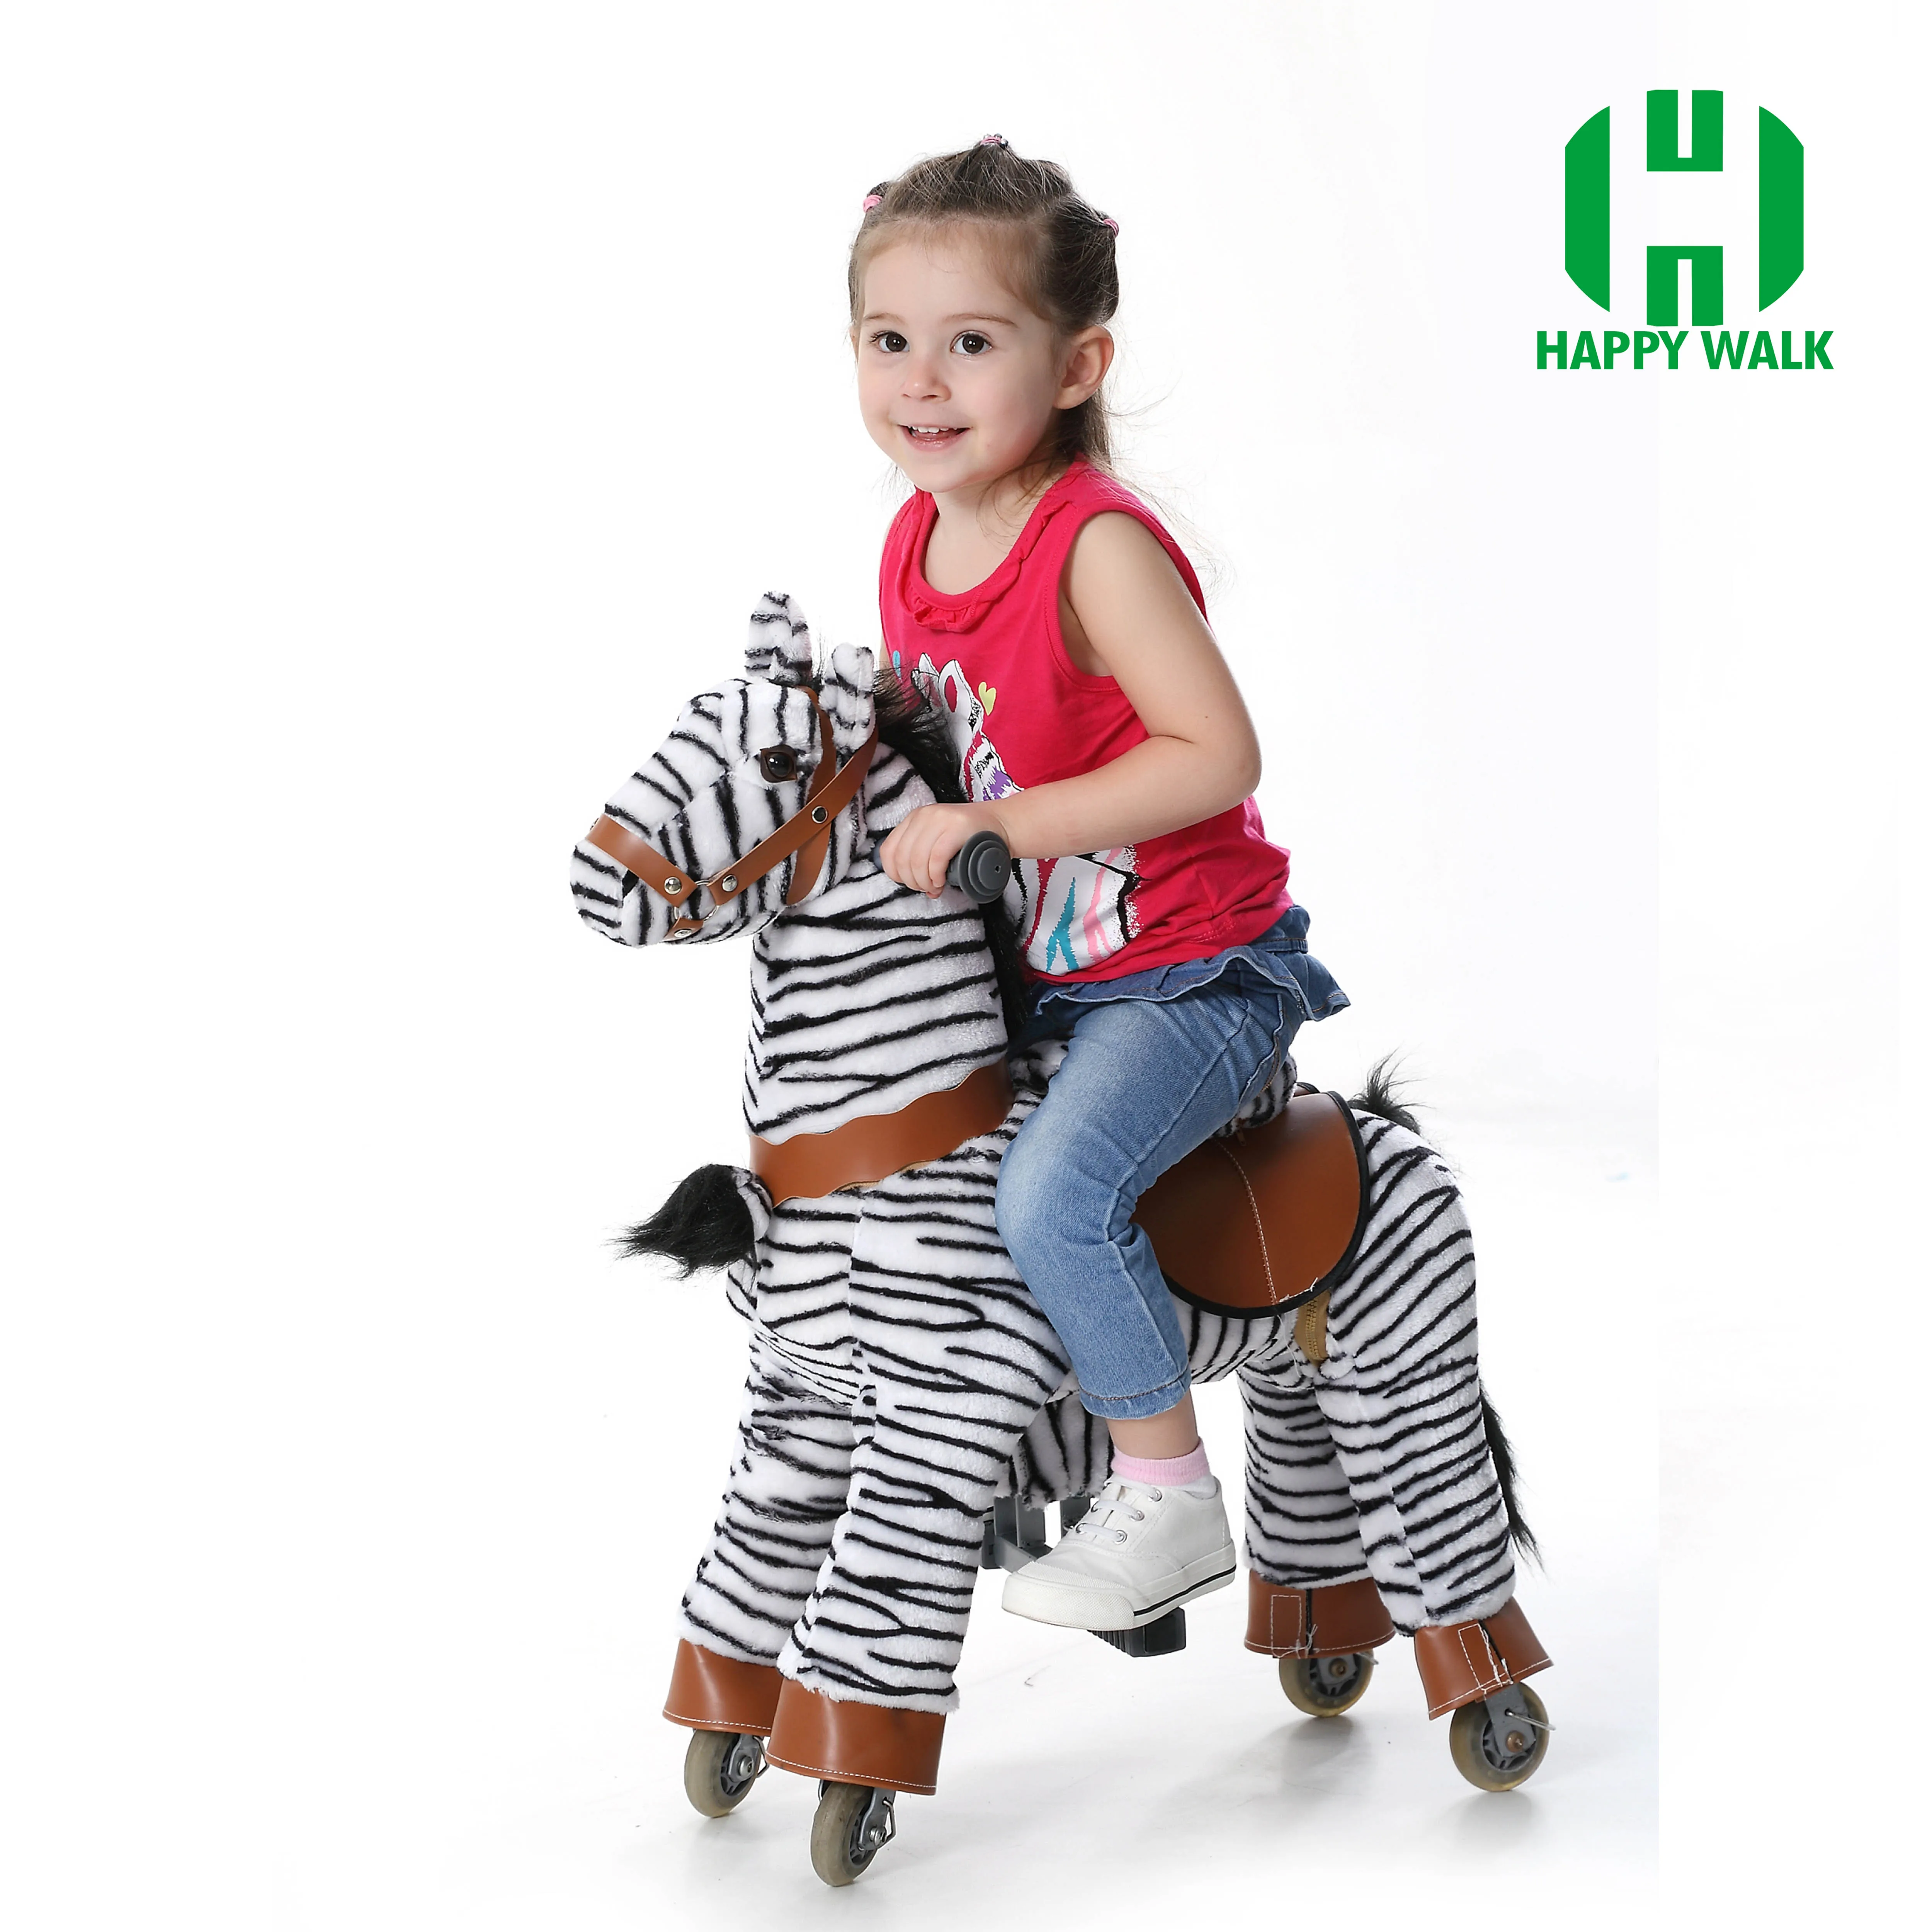 
toy zebra riding horse toys walking mechanical horse horse toy 